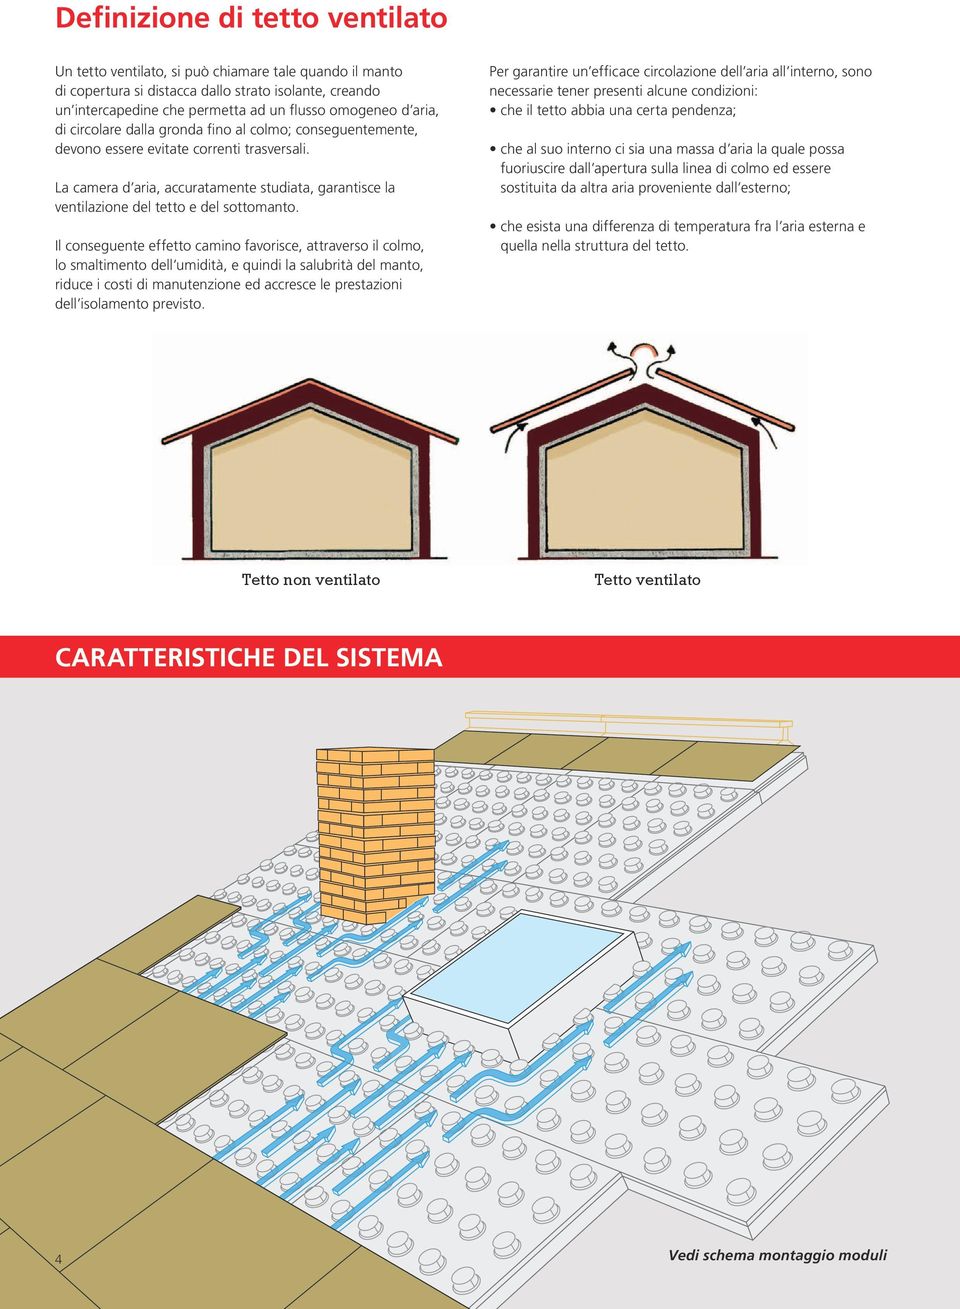 La camera d aria, accuratamente studiata, garantisce la ventilazione del tetto e del sottomanto.